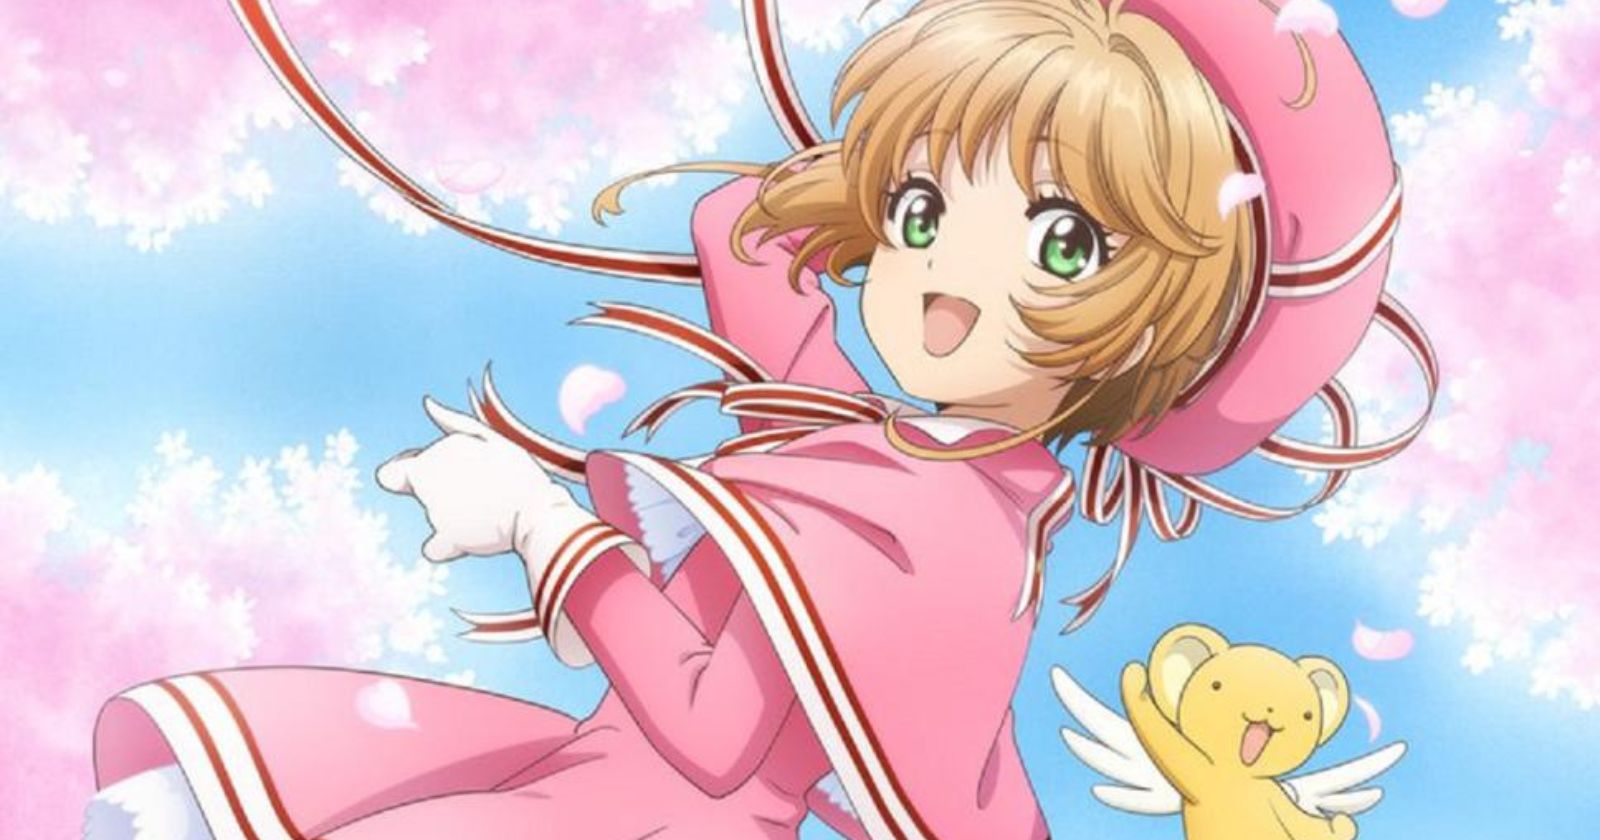 KHO ẢNH ) Sakura - Thủ lĩnh thẻ bài - Phần 8 - Sakura | Anime, Hoa anh đào,  Kỳ ảo